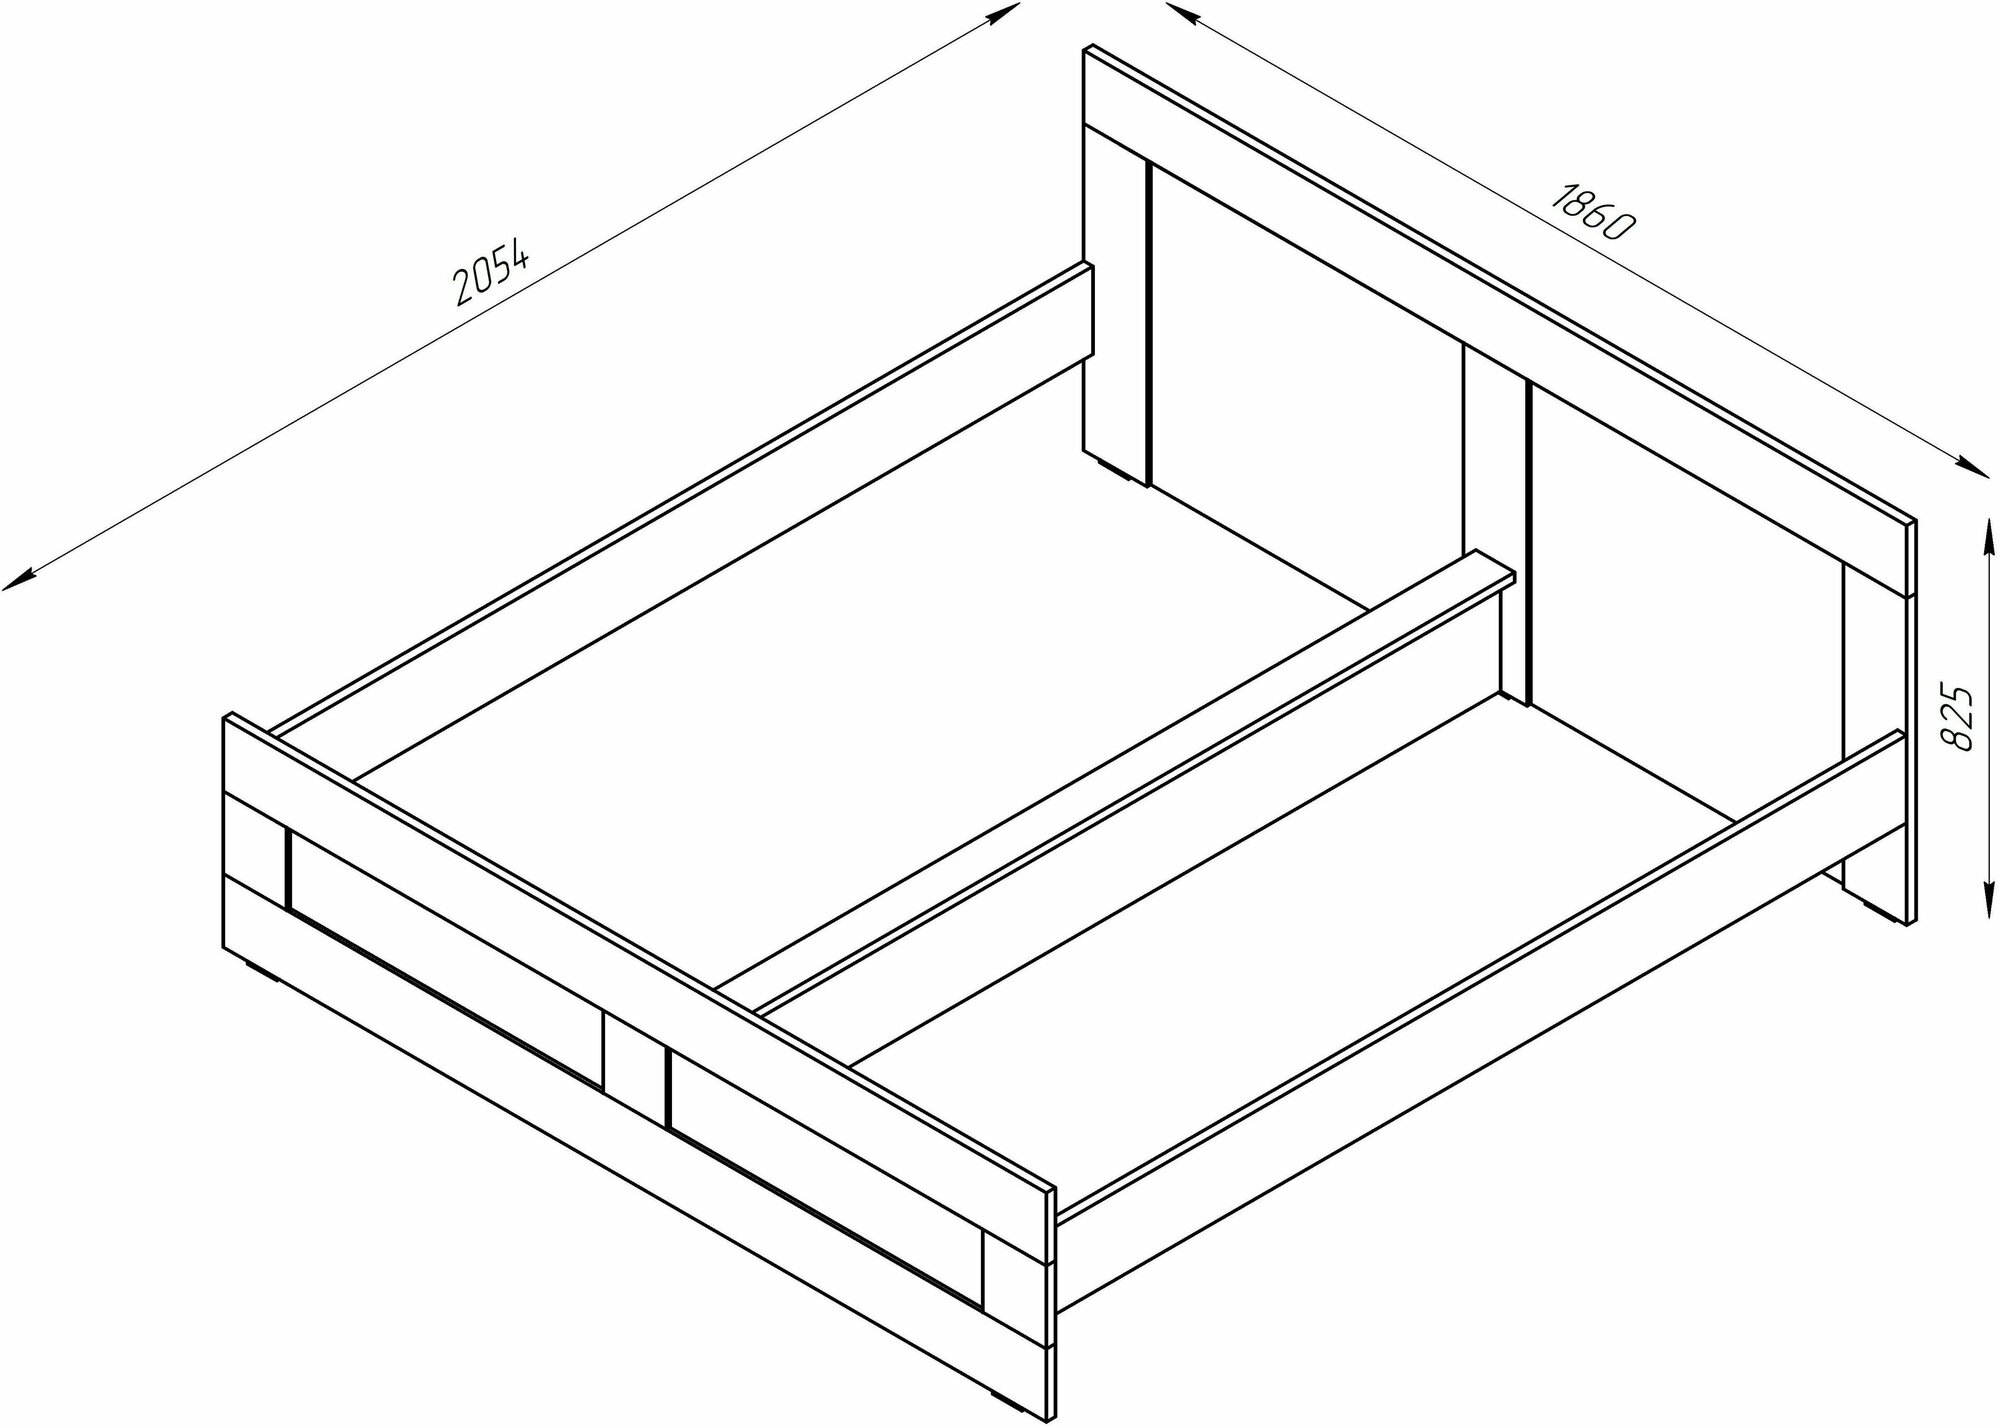 Кровать ГУД ЛАКК Сириус, двуспальная, 180х200 см, белая